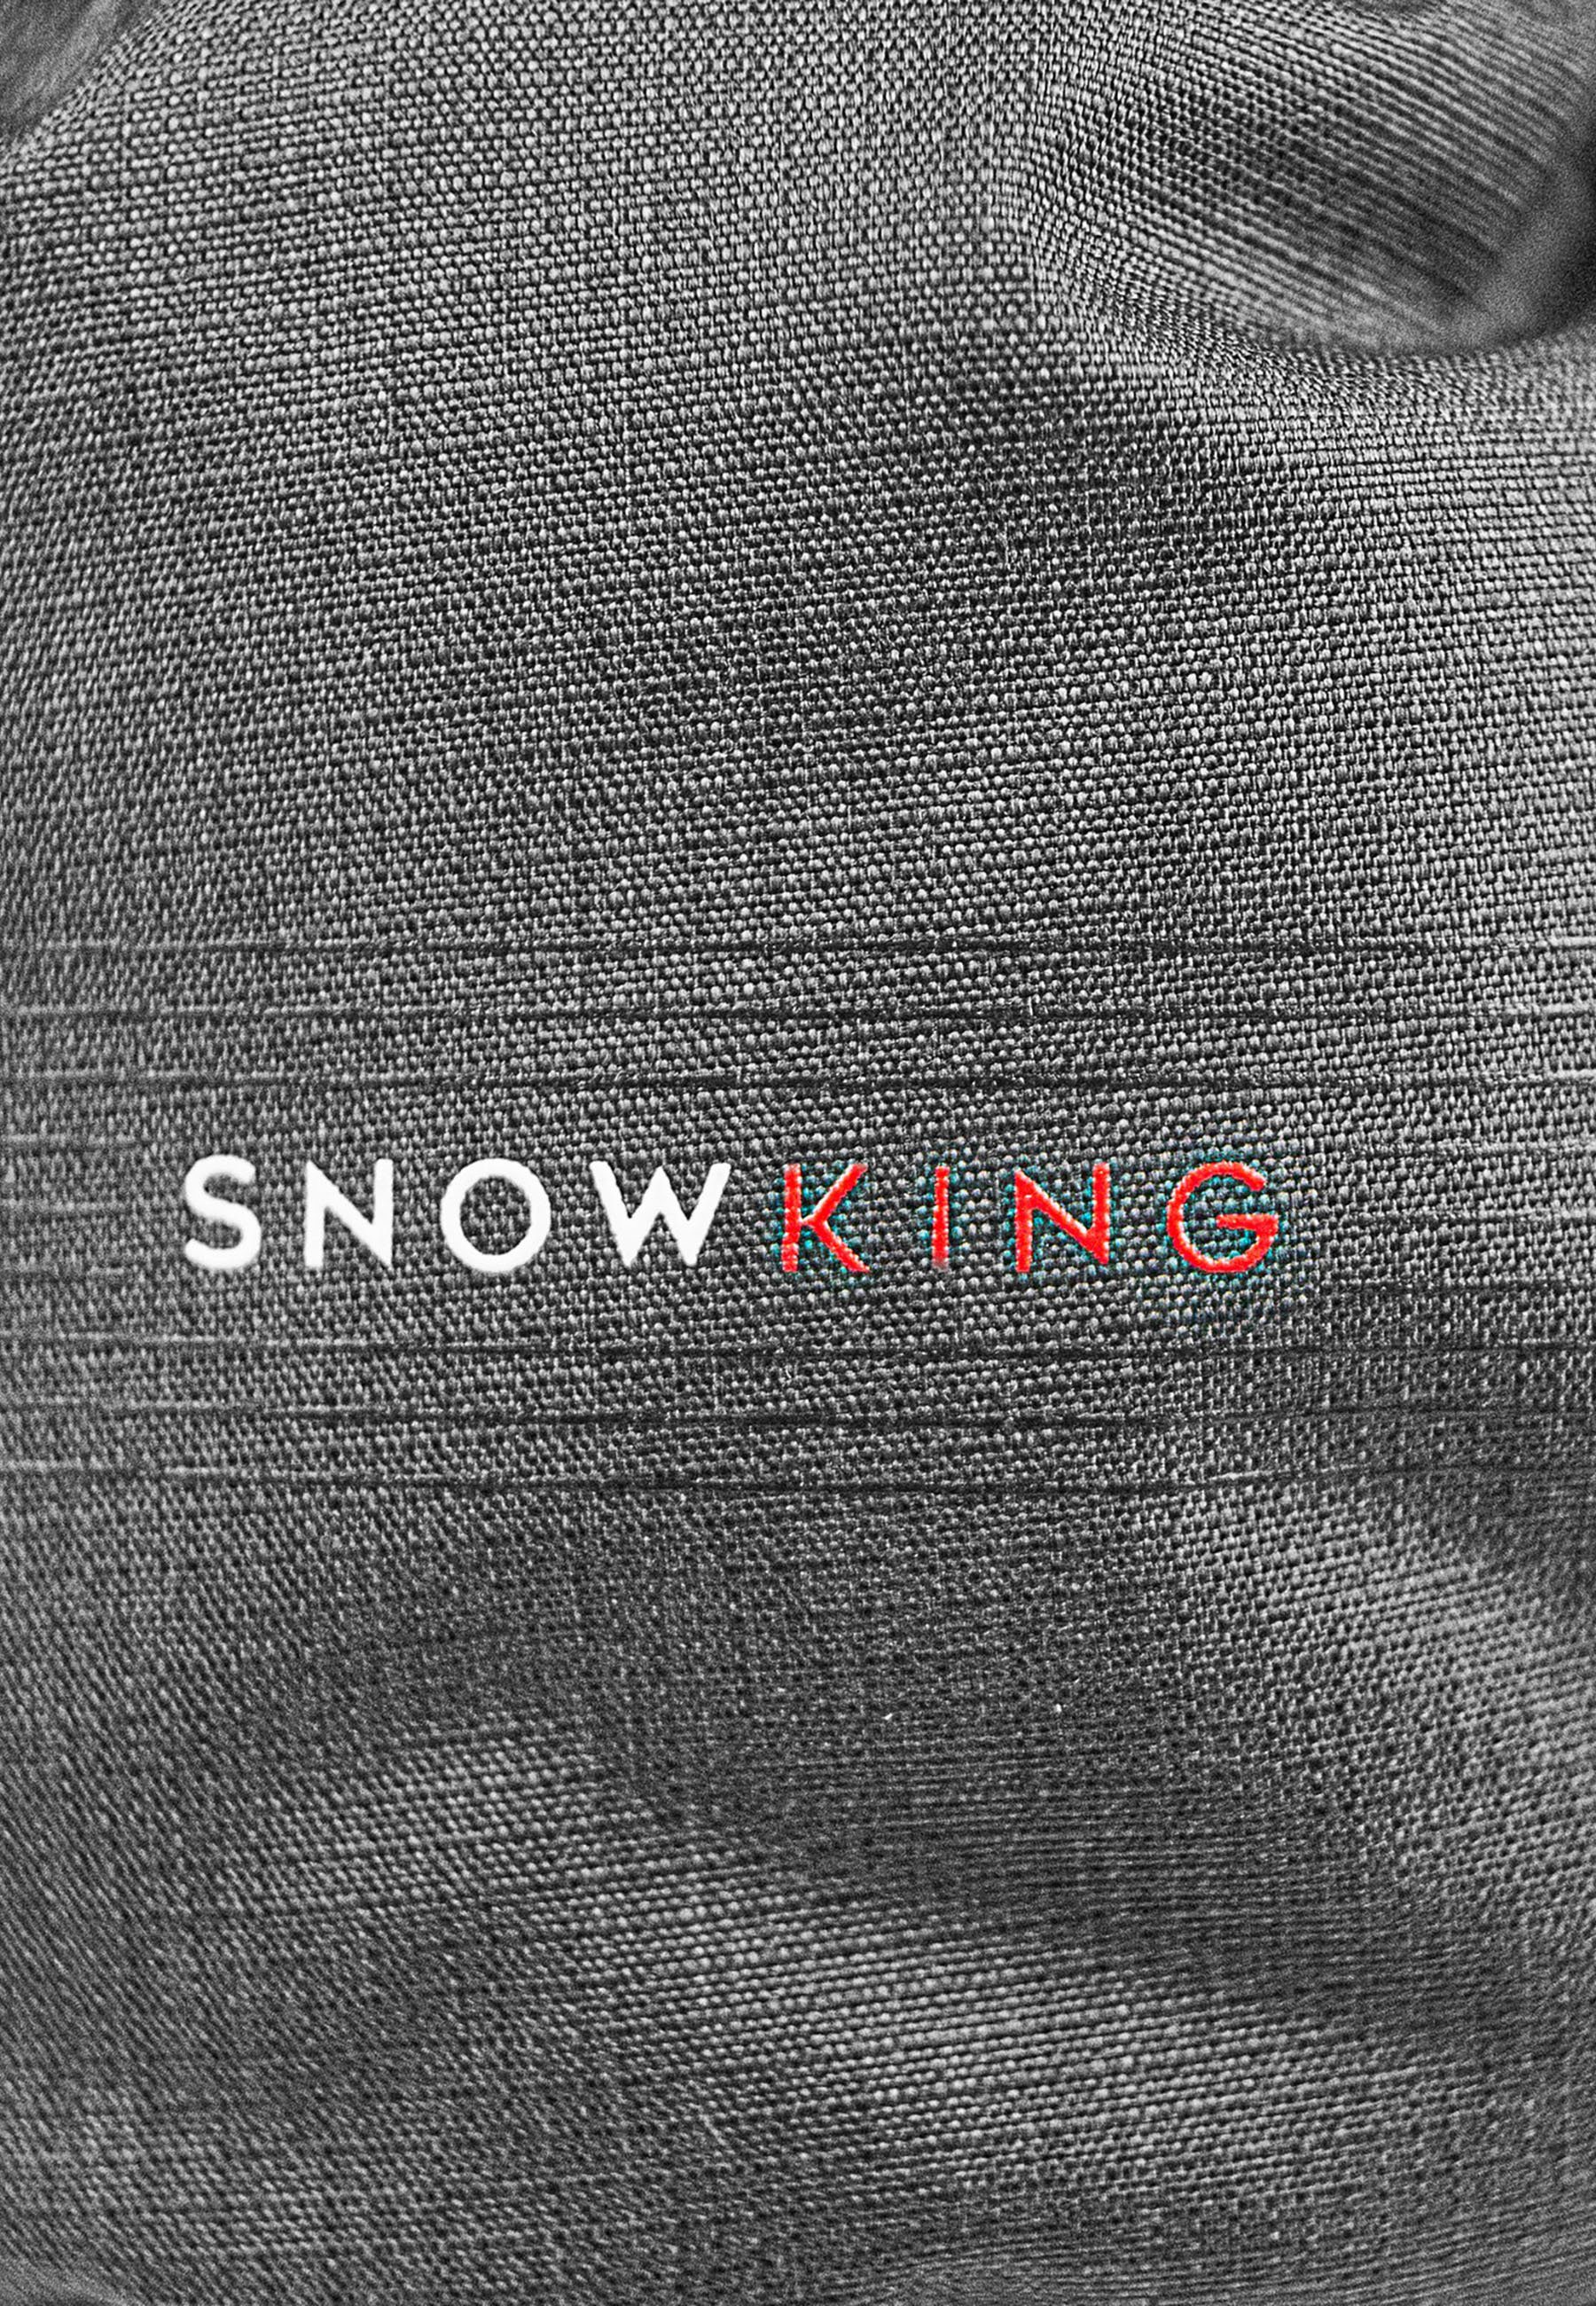 Reusch Skihandschuhe Snow grau-schwarz aus King Material atmungsaktivem